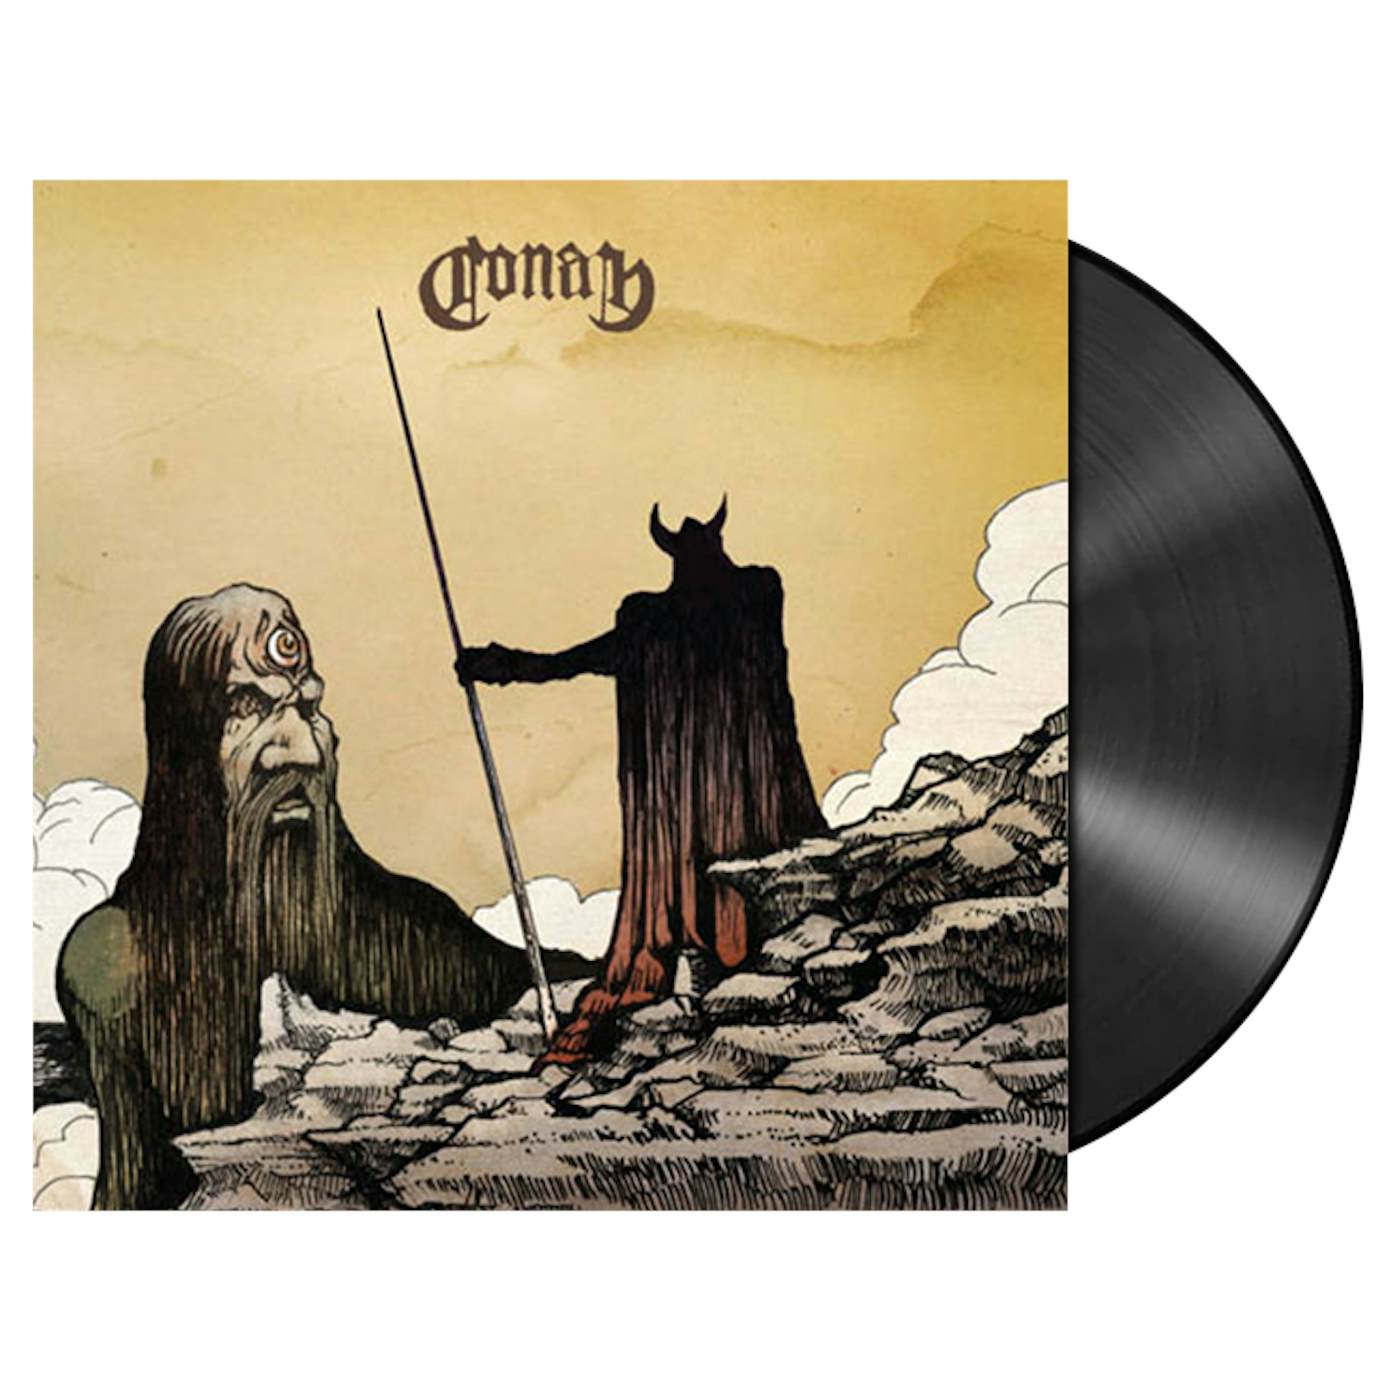 CONAN - 'Monnos' LP (Vinyl)